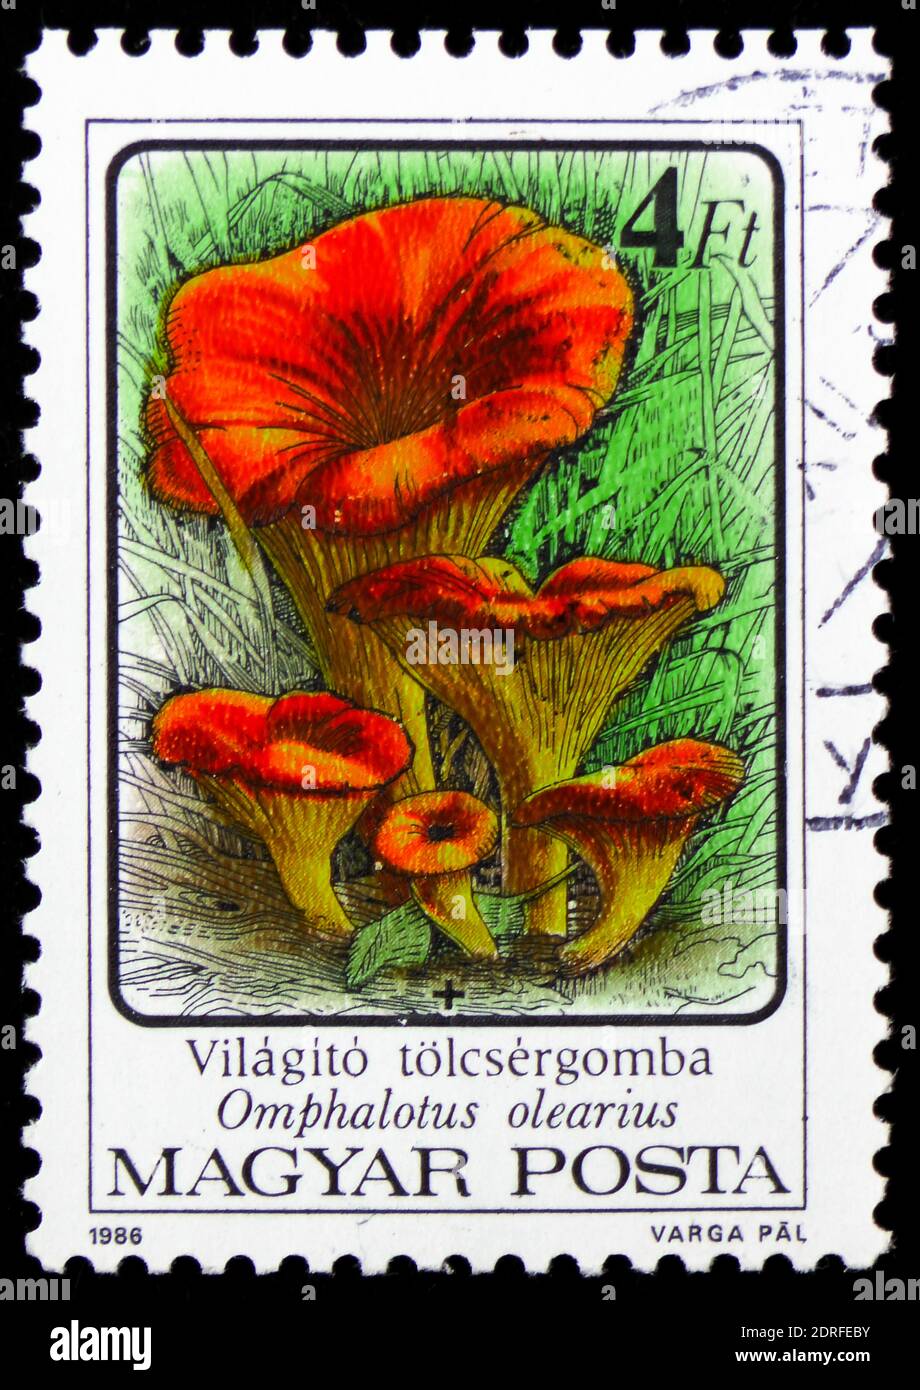 MOSCOU, RUSSIE - 4 JANVIER 2019 : un timbre imprimé en Hongrie montre Omphalotus olearius, série de champignons, vers 1986 Banque D'Images